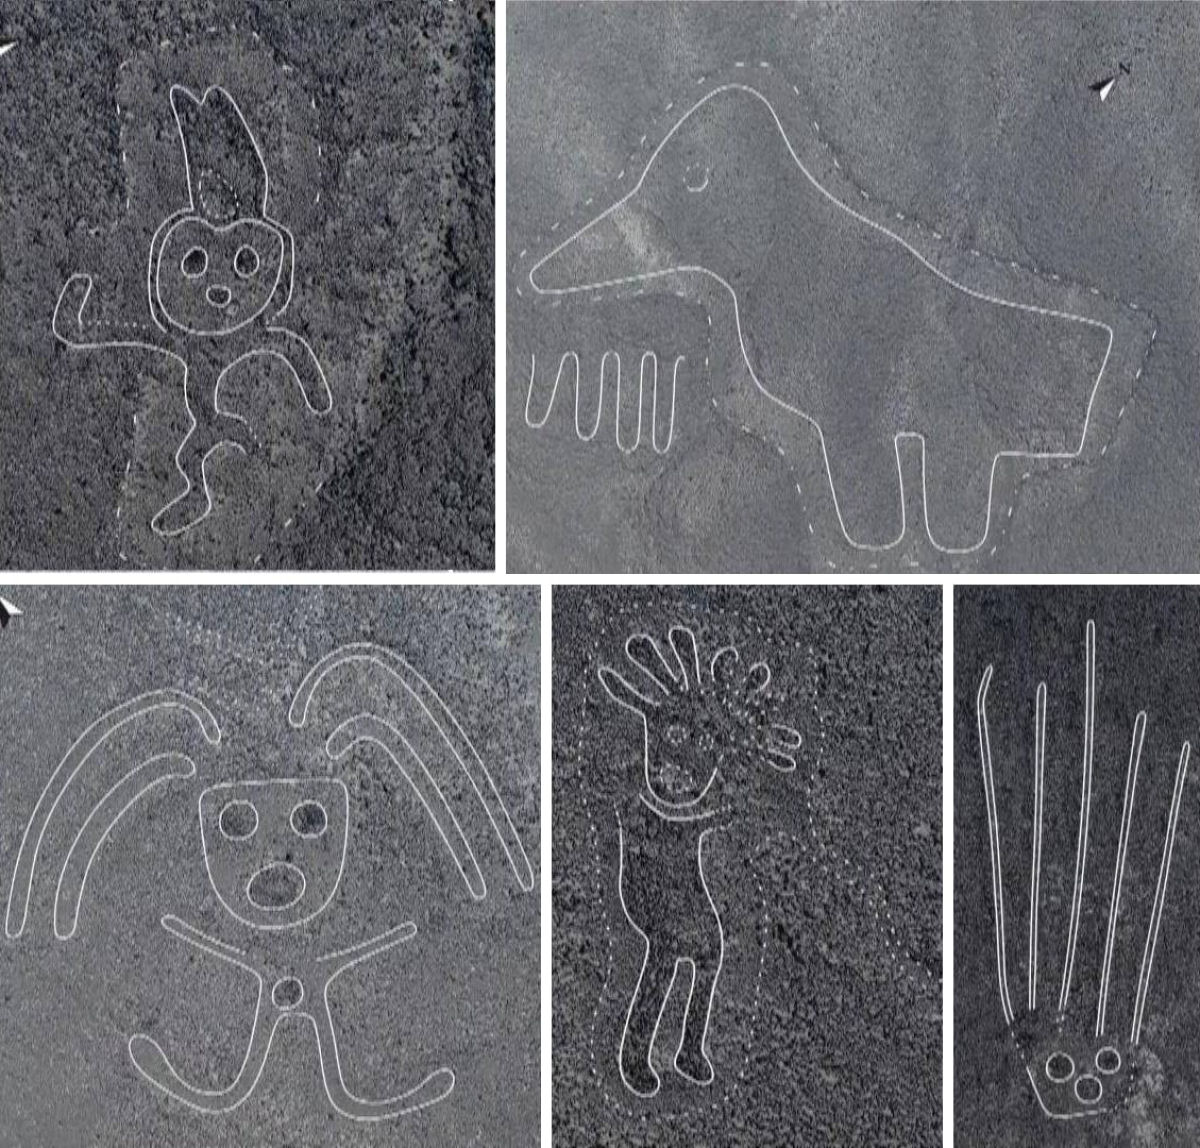 Arquelogos descobrem quase 170 linhas de Nazca datadas de cerca de 2.000 anos no Peru 01